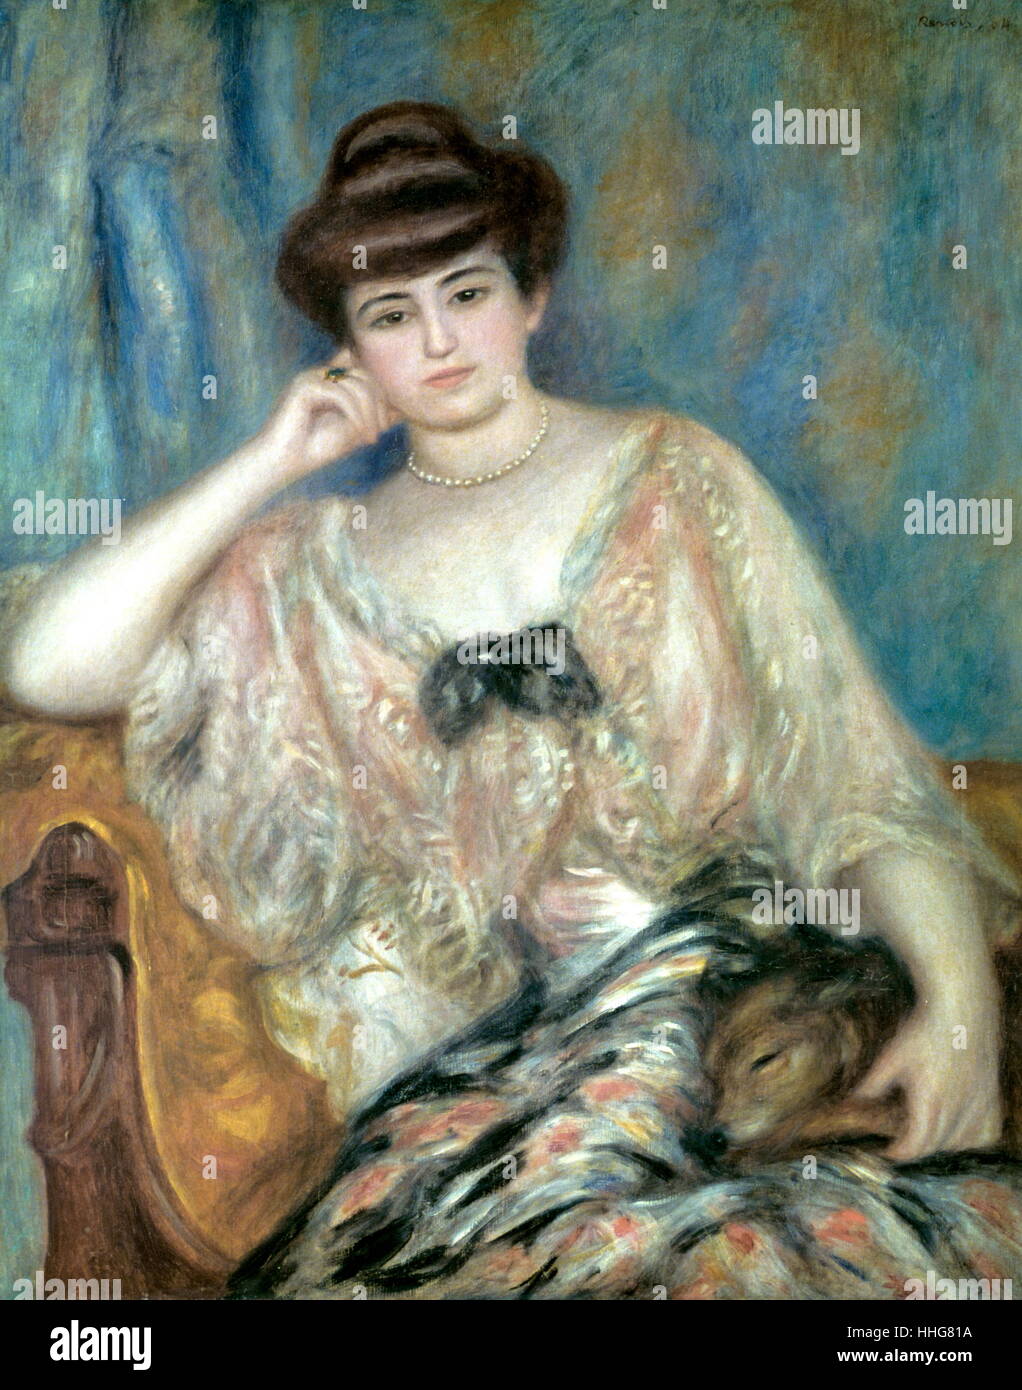 Pierre-Auguste Renoir (1841 - 1919) "Portrait von Misia Sert" 1883 Öl auf Leinwand. Auguste Renoir, war ein französischer Künstler, war einer der führenden Maler bei der Entwicklung der impressionistischen Stil. Stockfoto